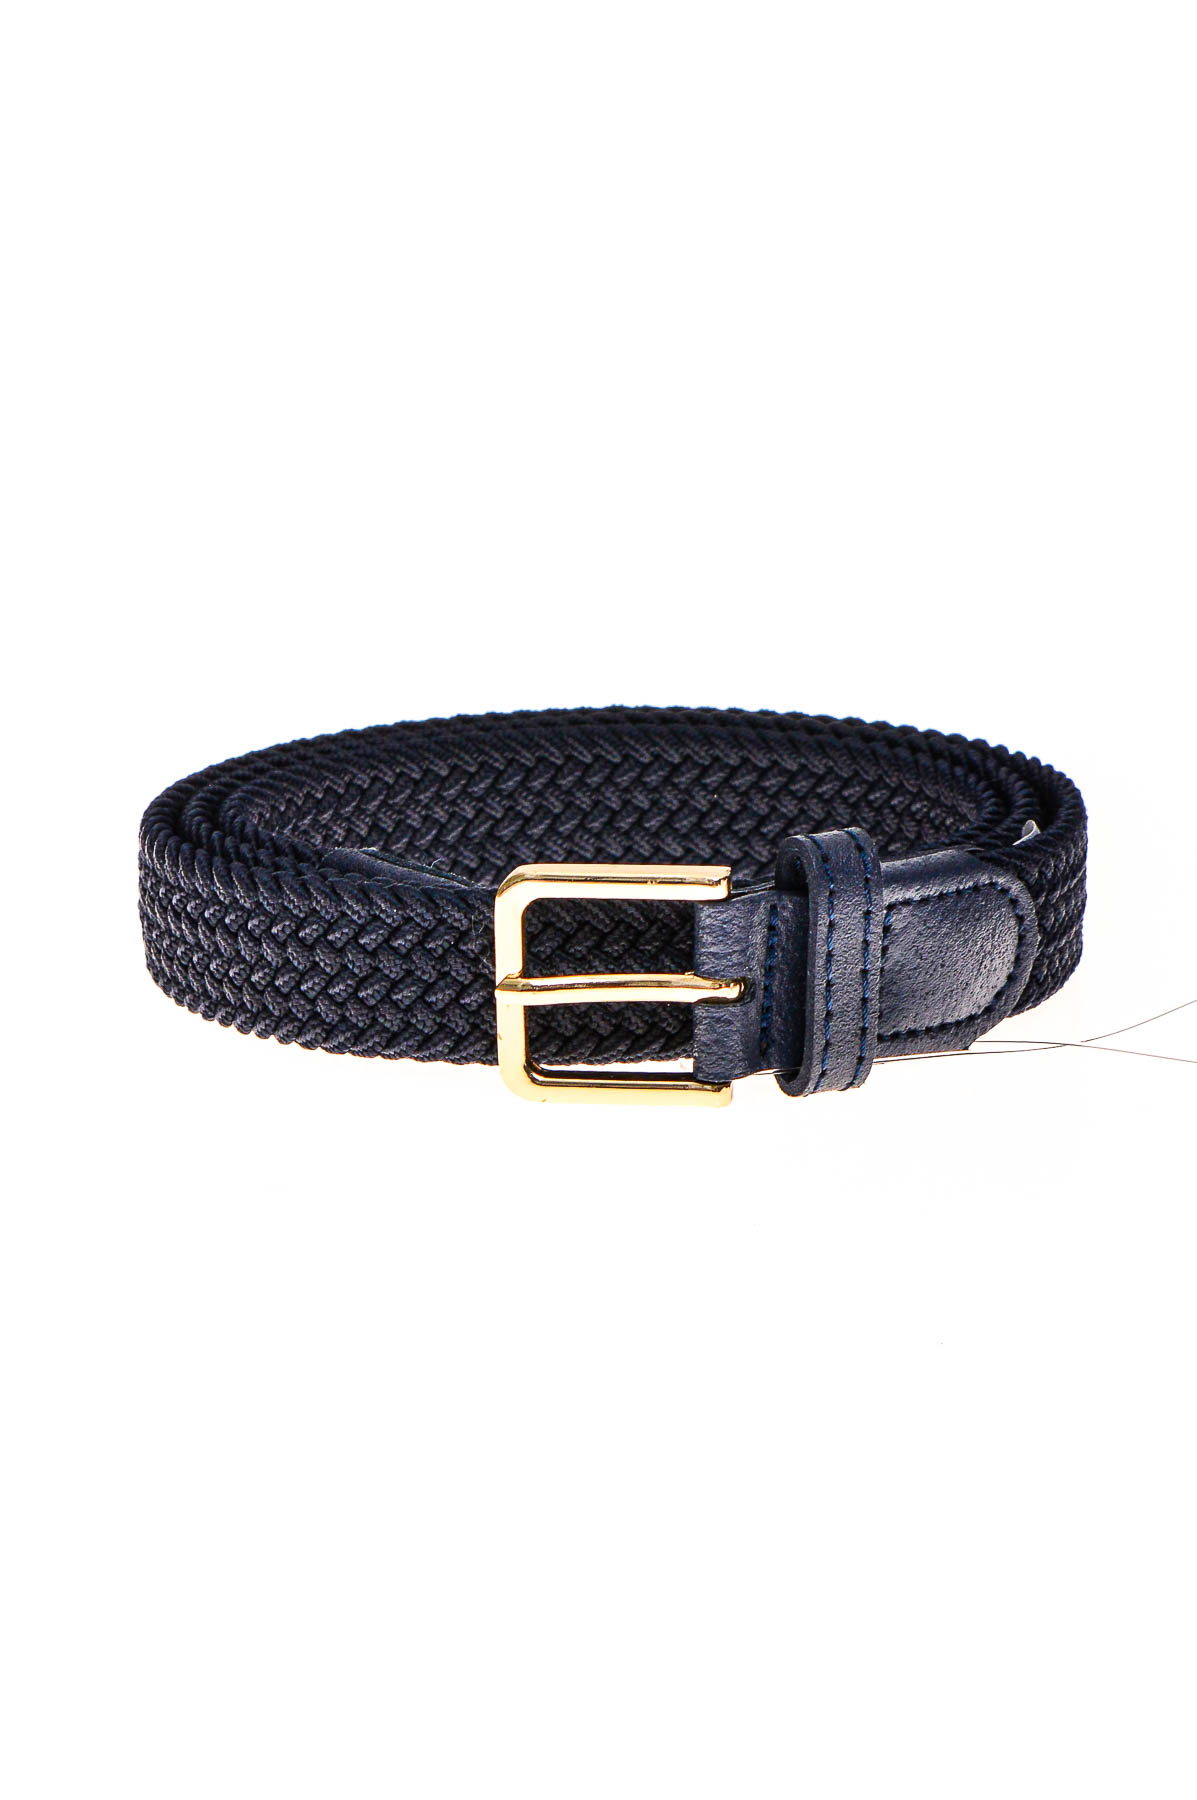 Ladies's belt - 0